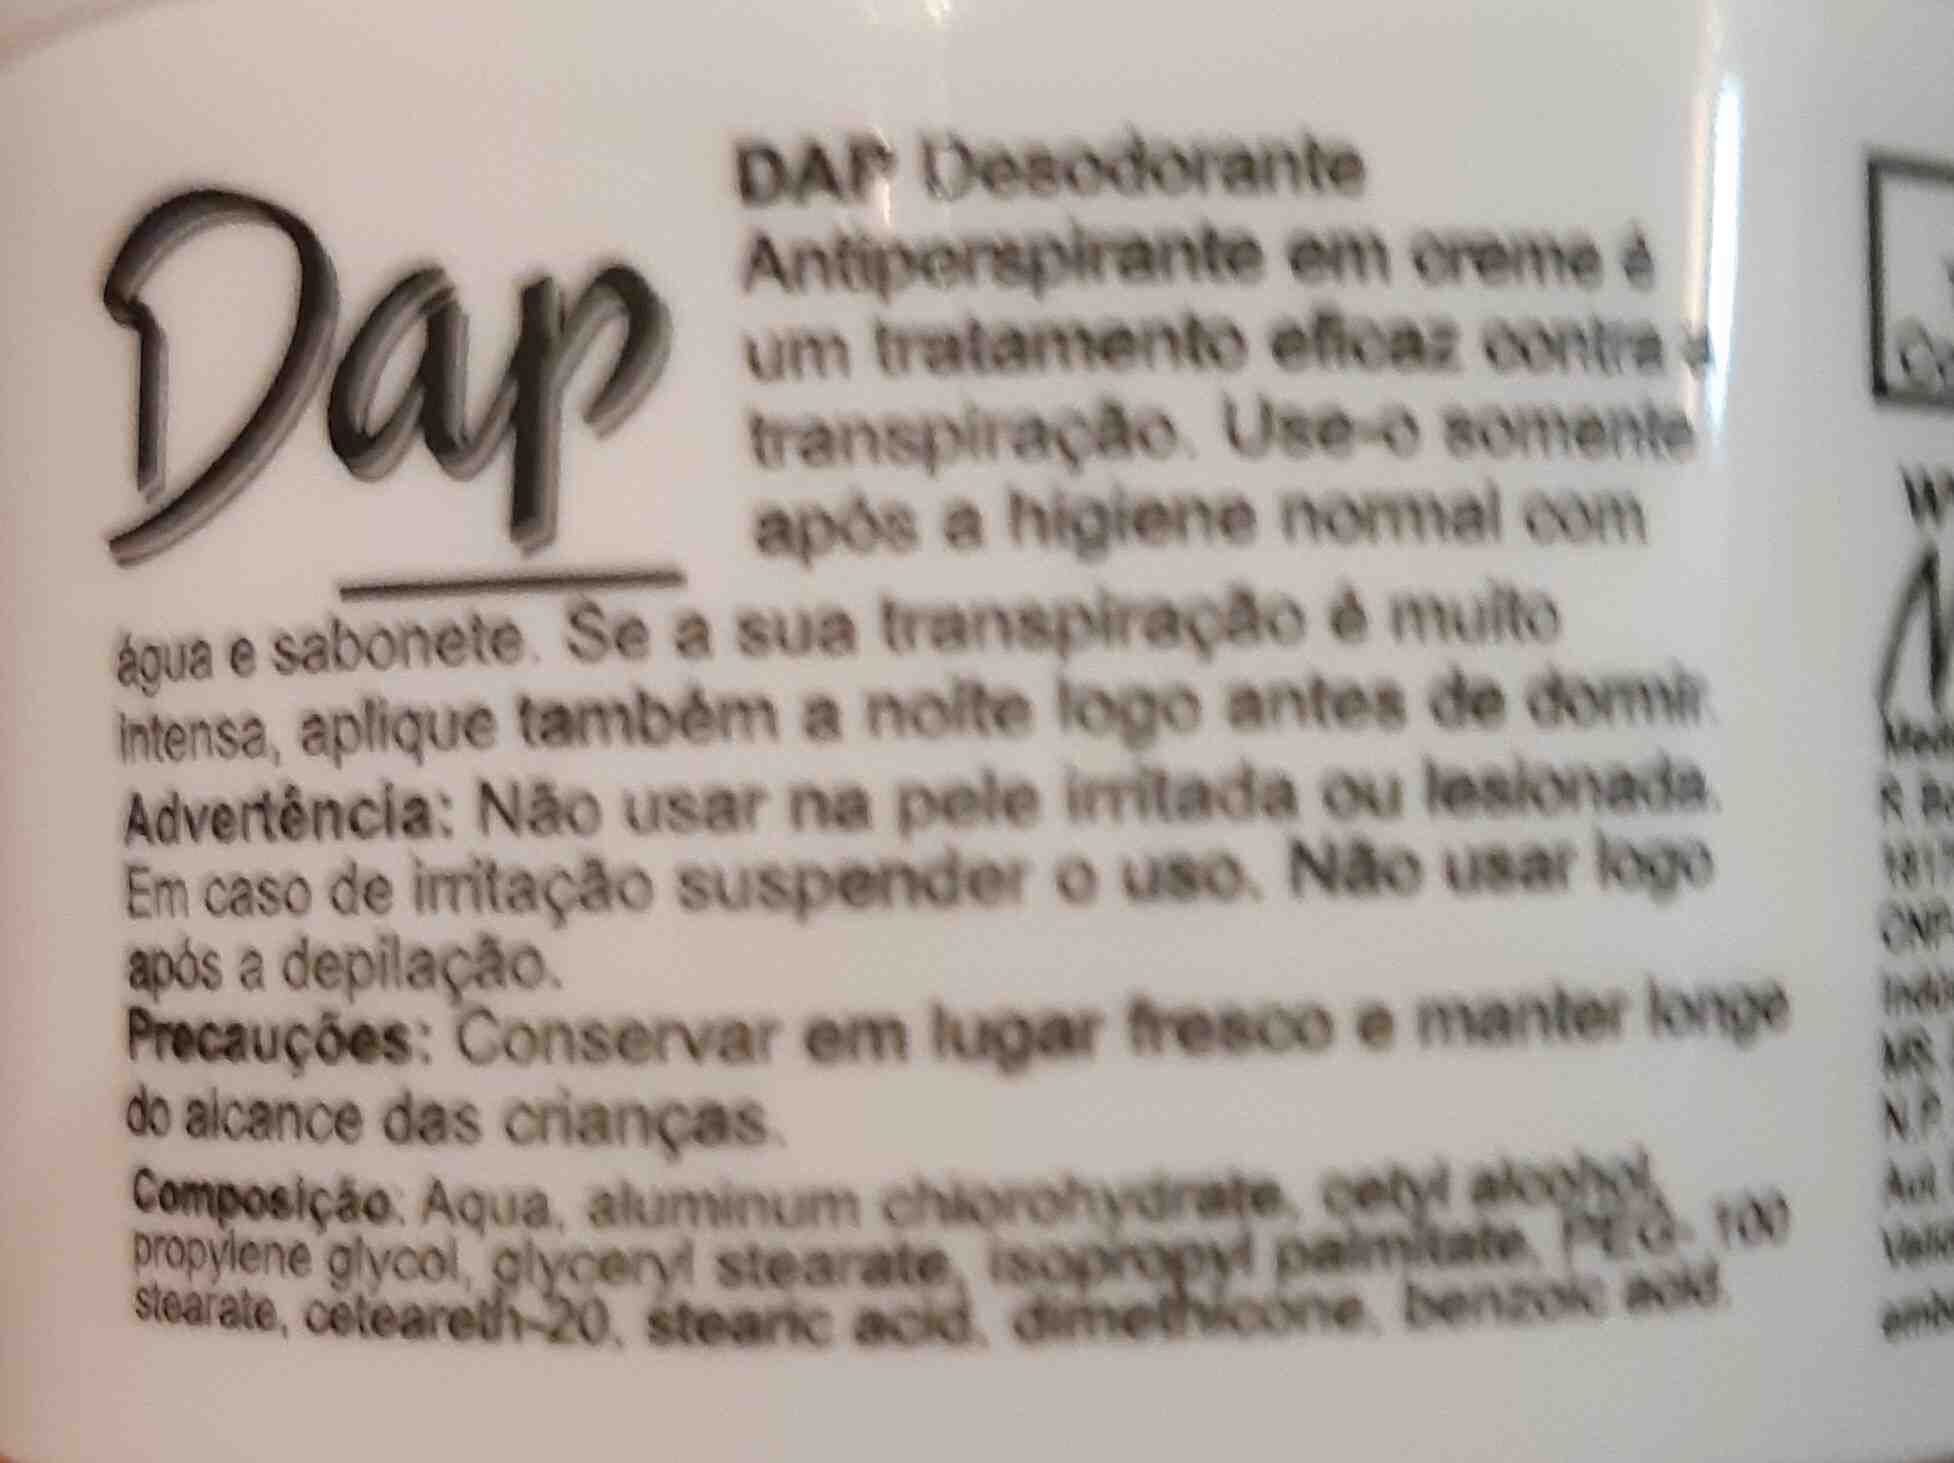 Dap desodorante - Ingredientes - en